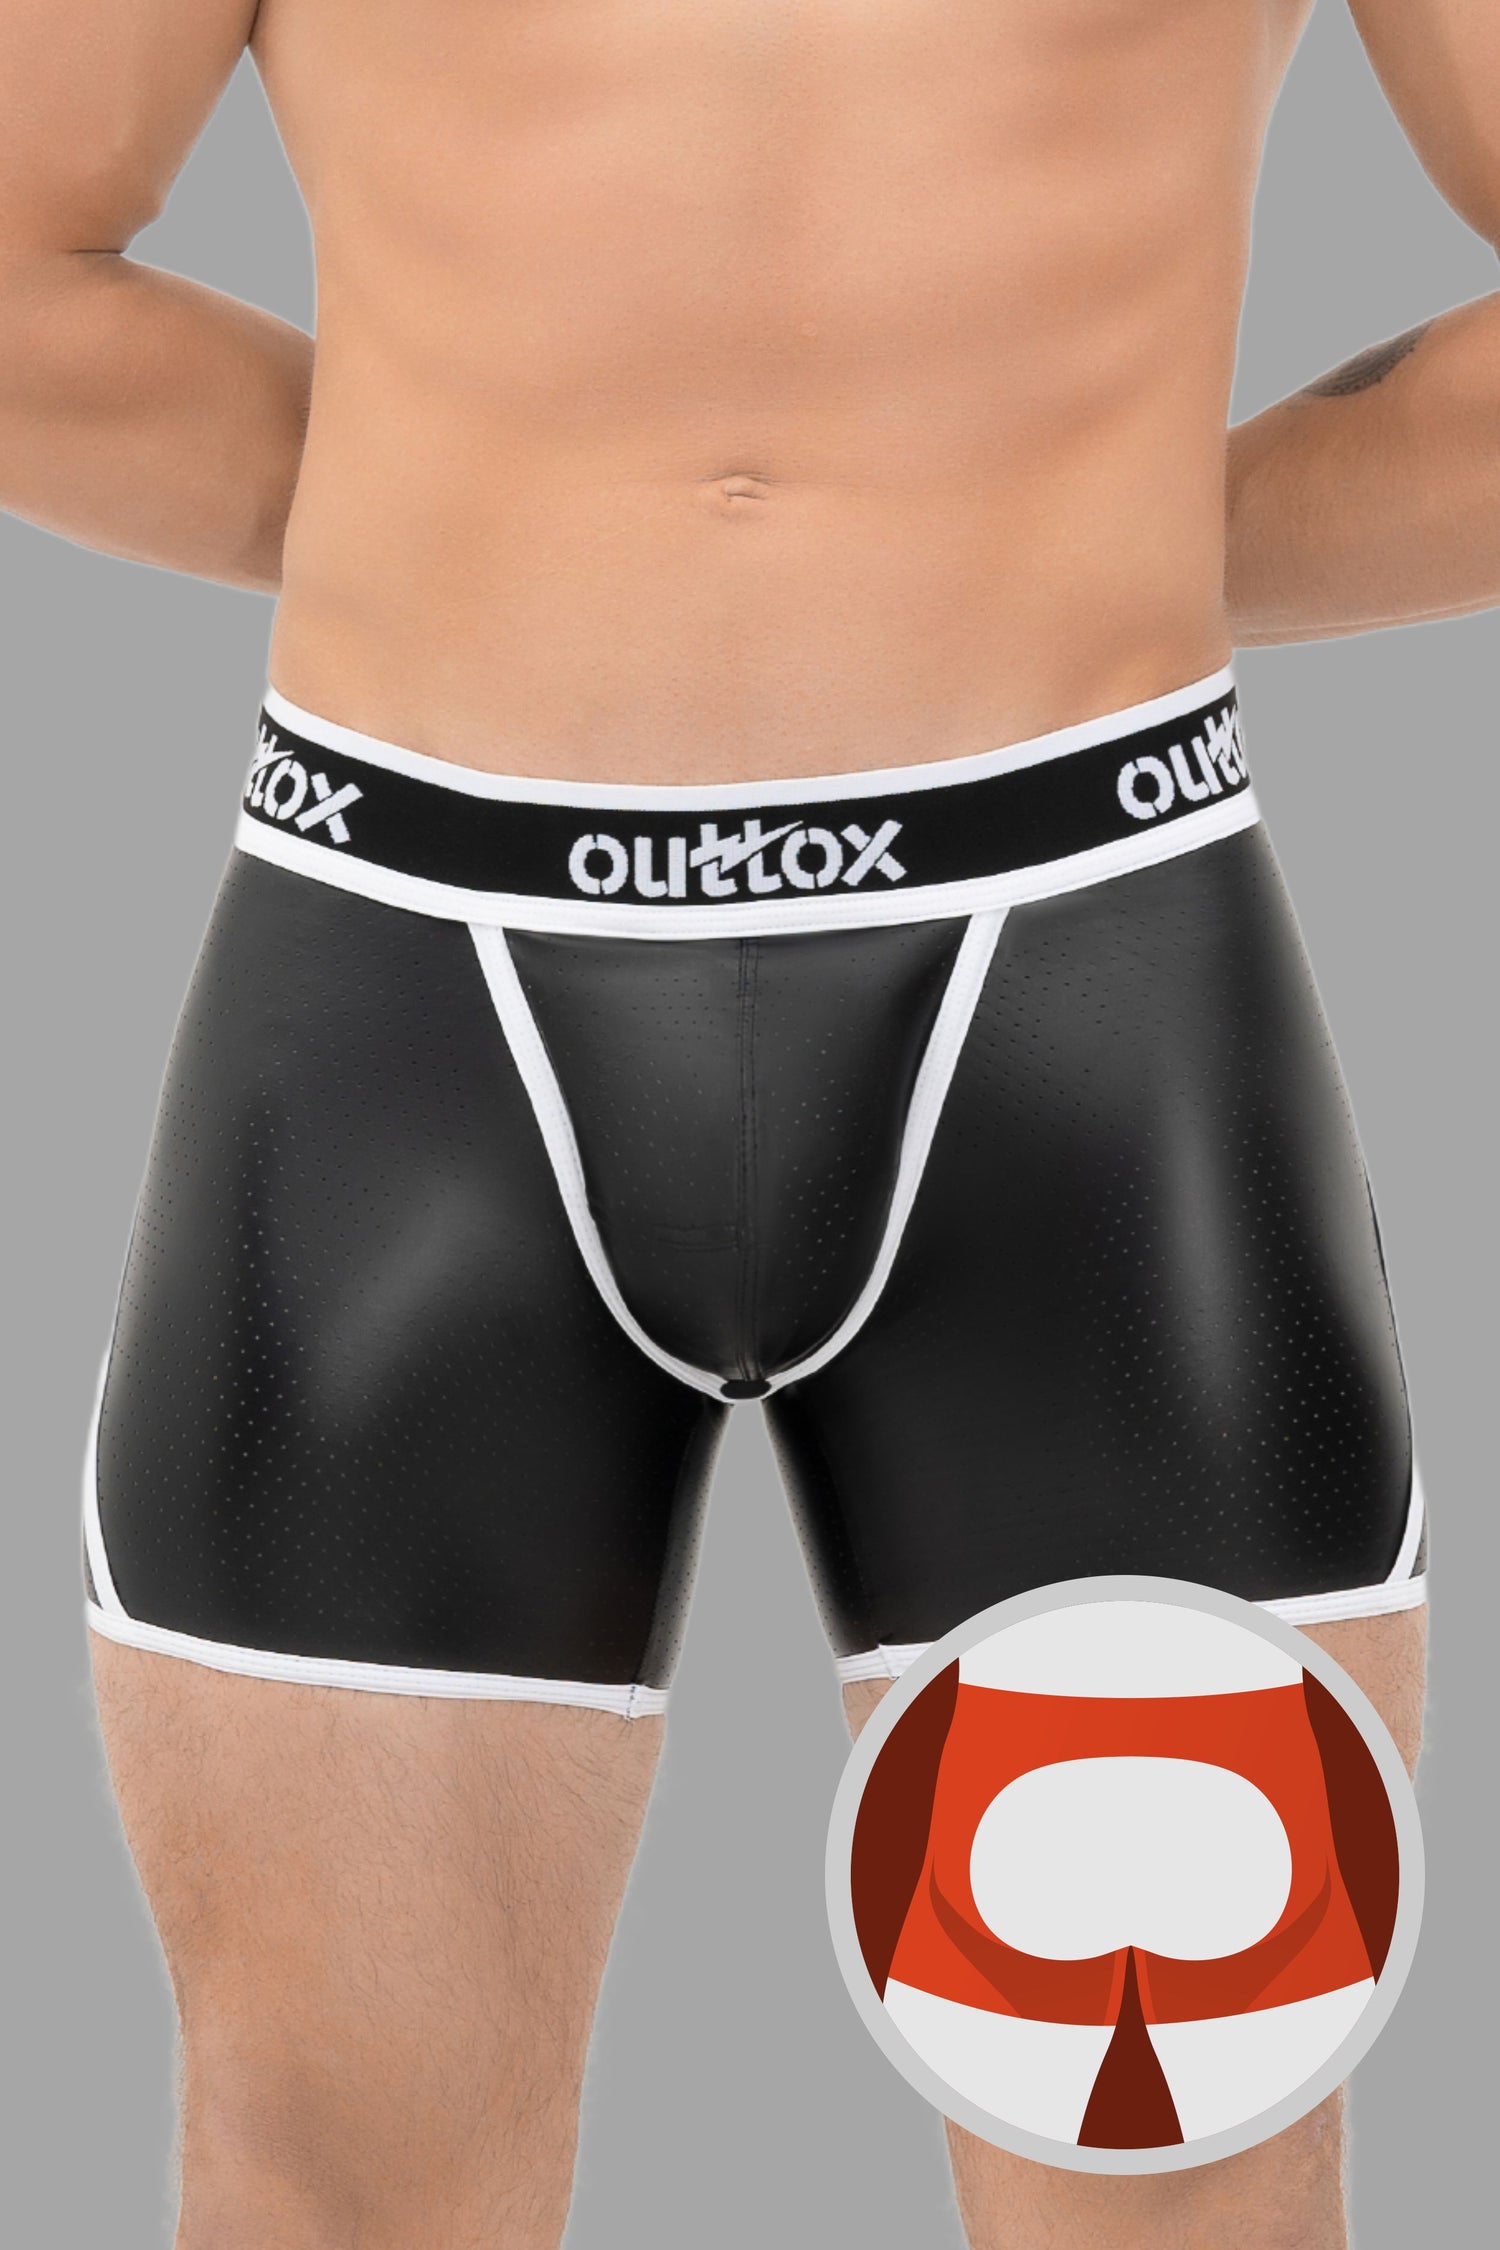 Outtox. Pantalones cortos traseros abiertos con bragueta a presión. Negro+Blanco